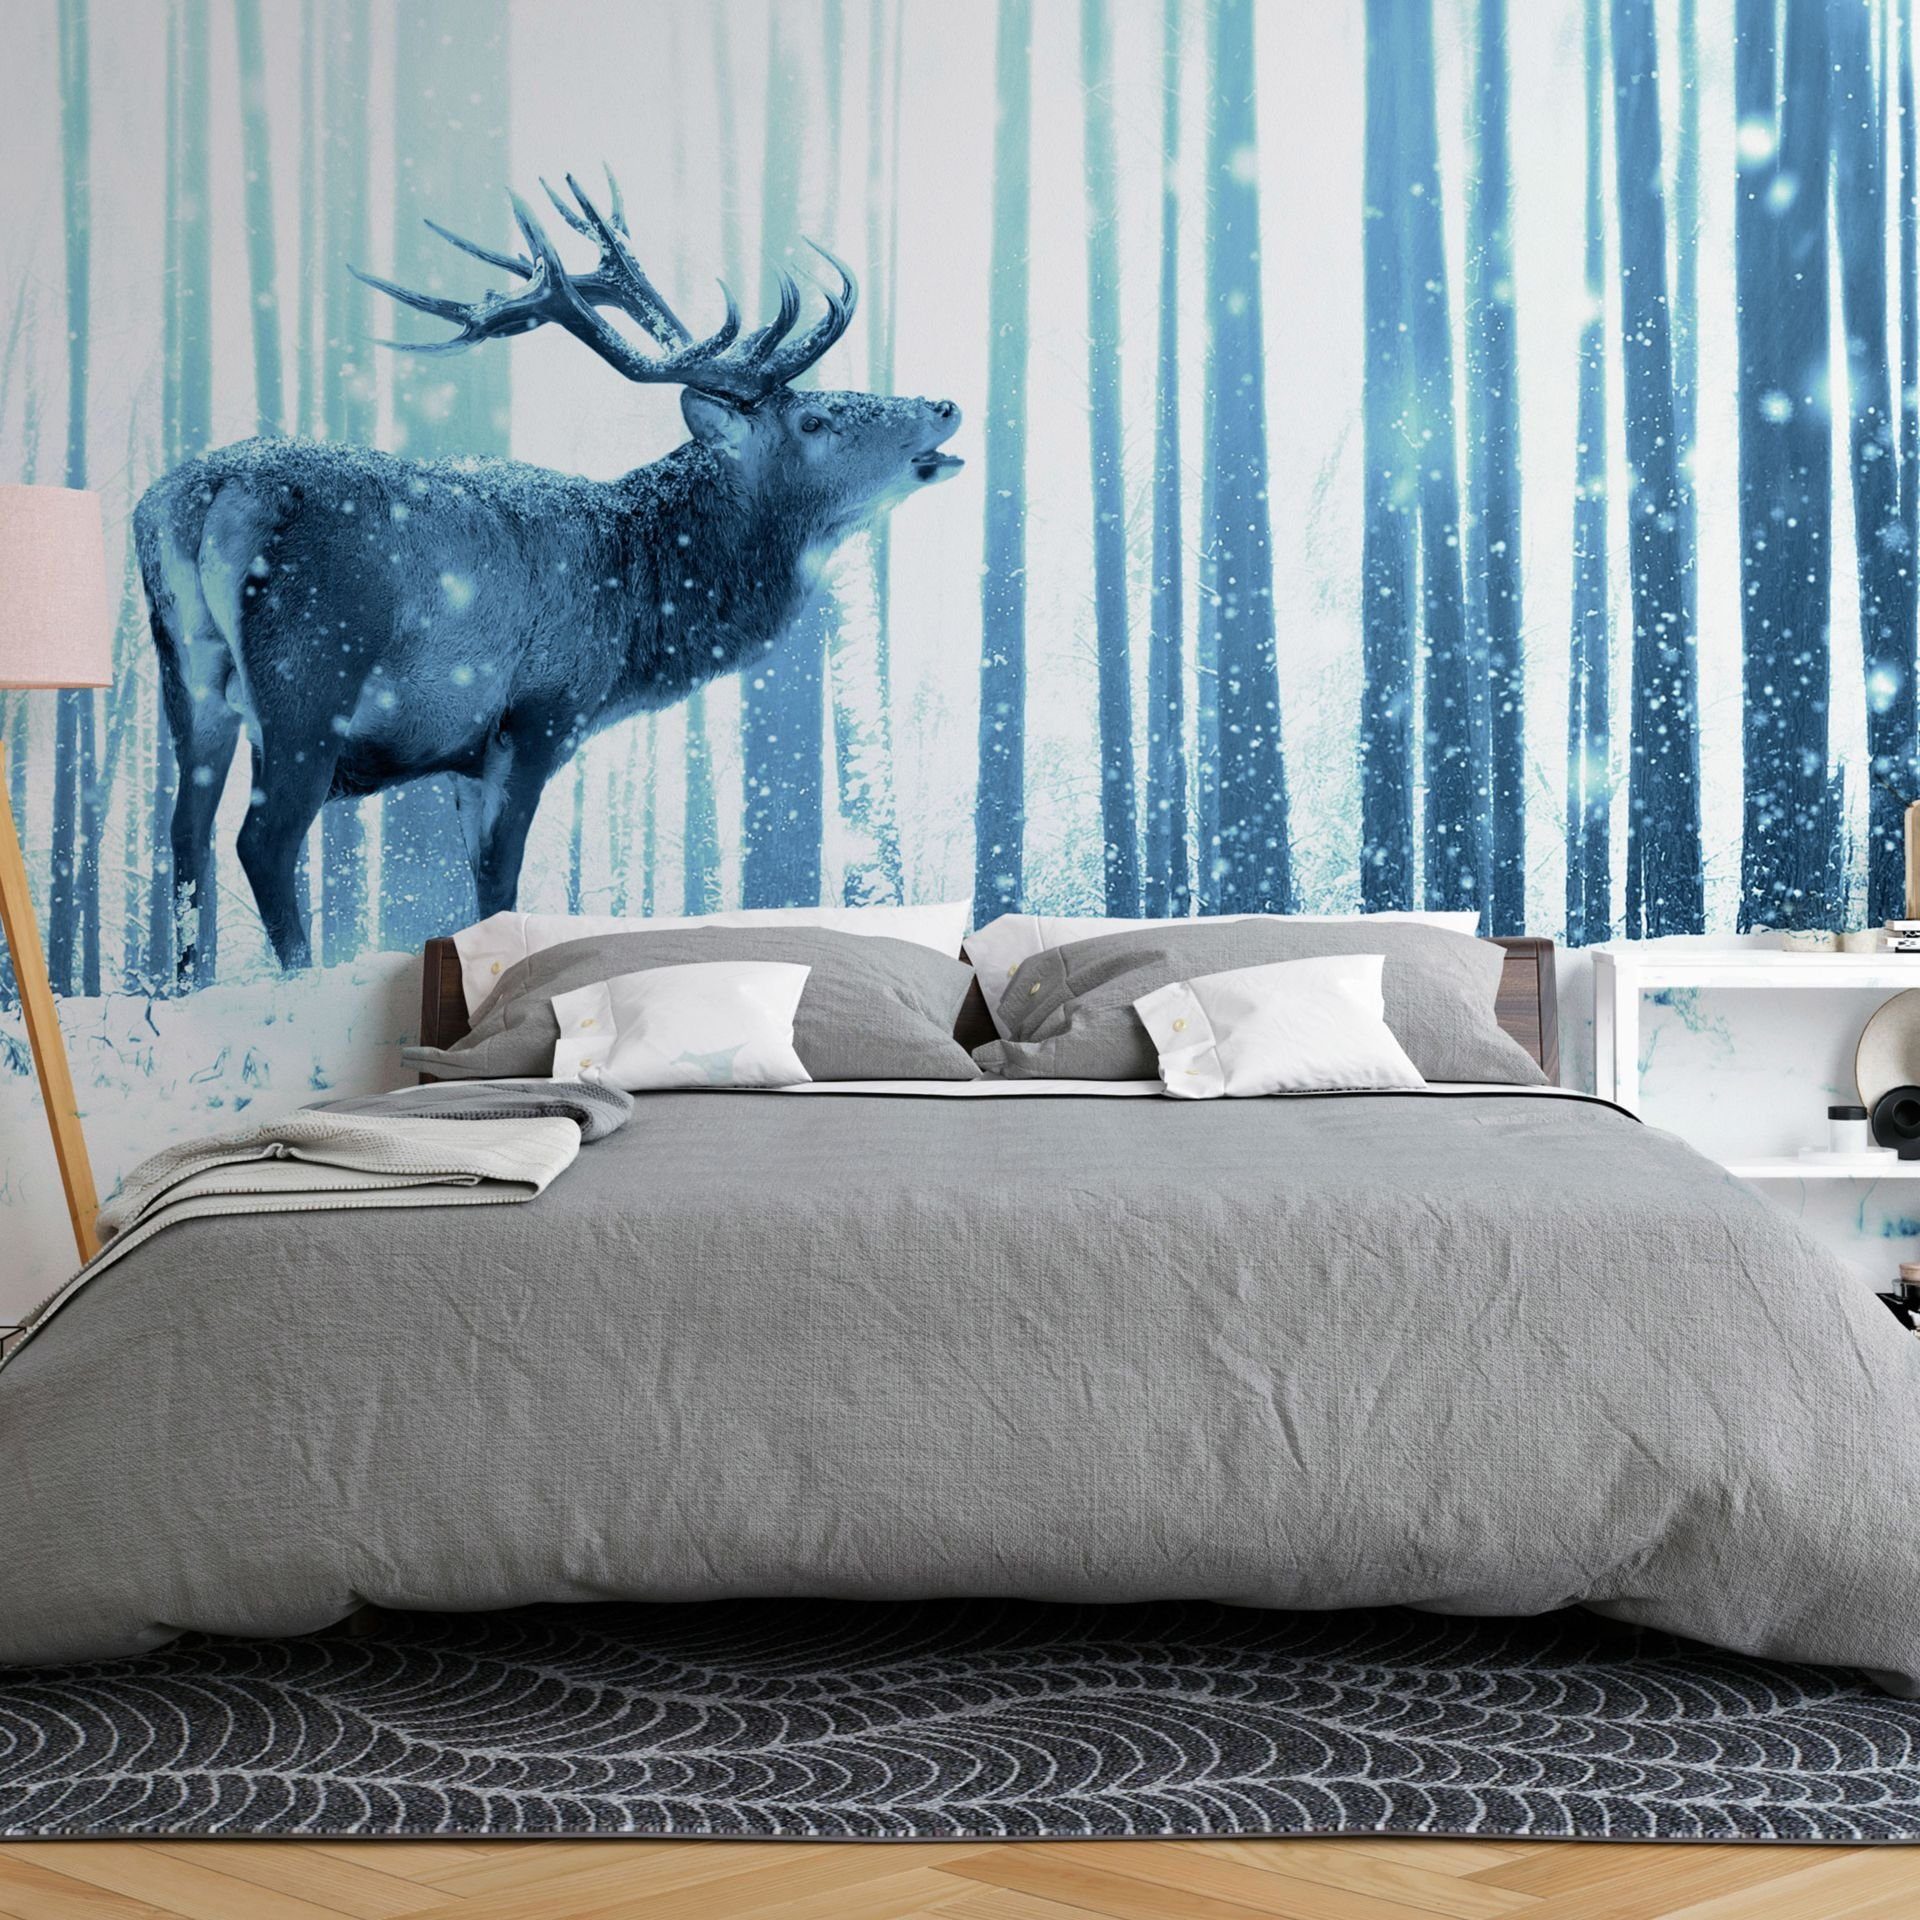 Vliestapete matt, in Deer Design KUNSTLOFT the lichtbeständige (Blue) Tapete 0.98x0.7 Snow m,